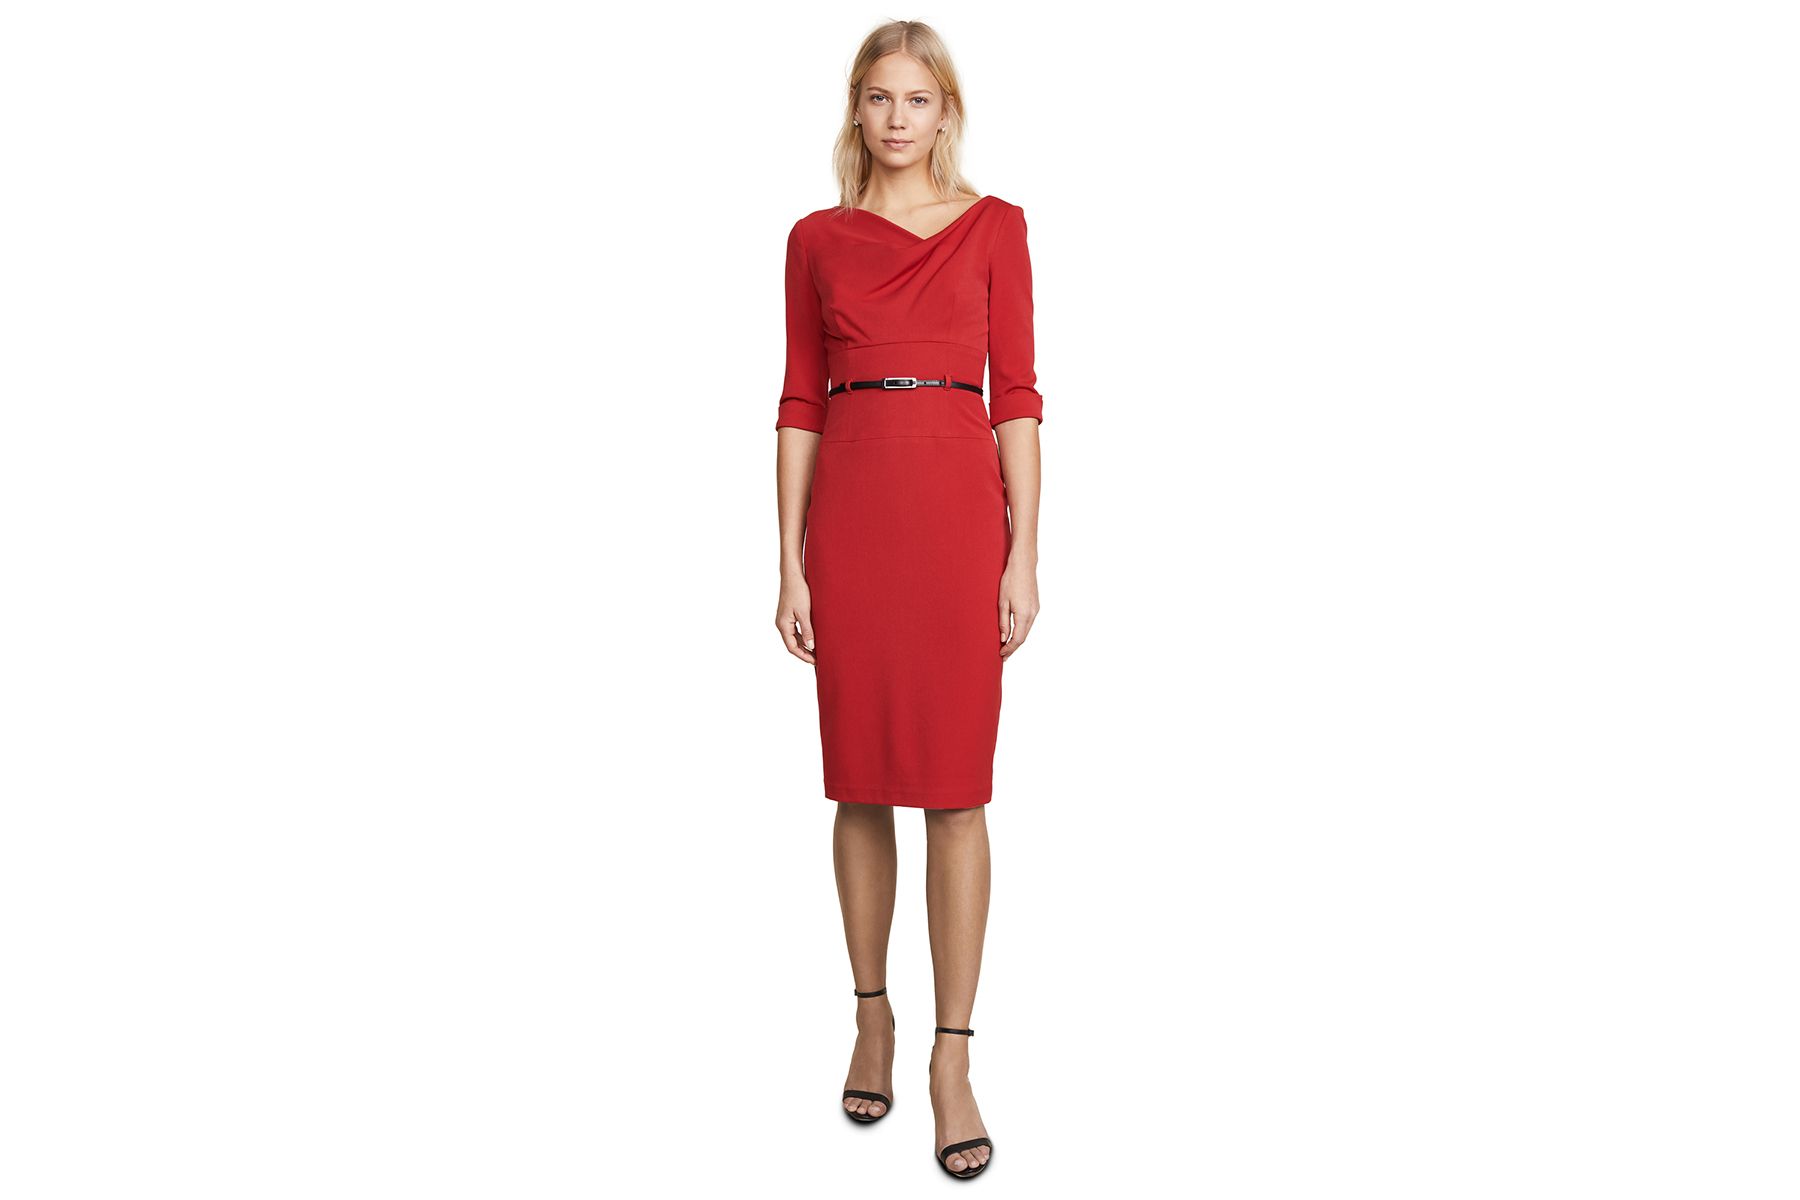 ارتدت ميغان ماركل للتو أروع فستان أحمر - وإليك كيفية تقليد إطلالتها بأقل تكلفة